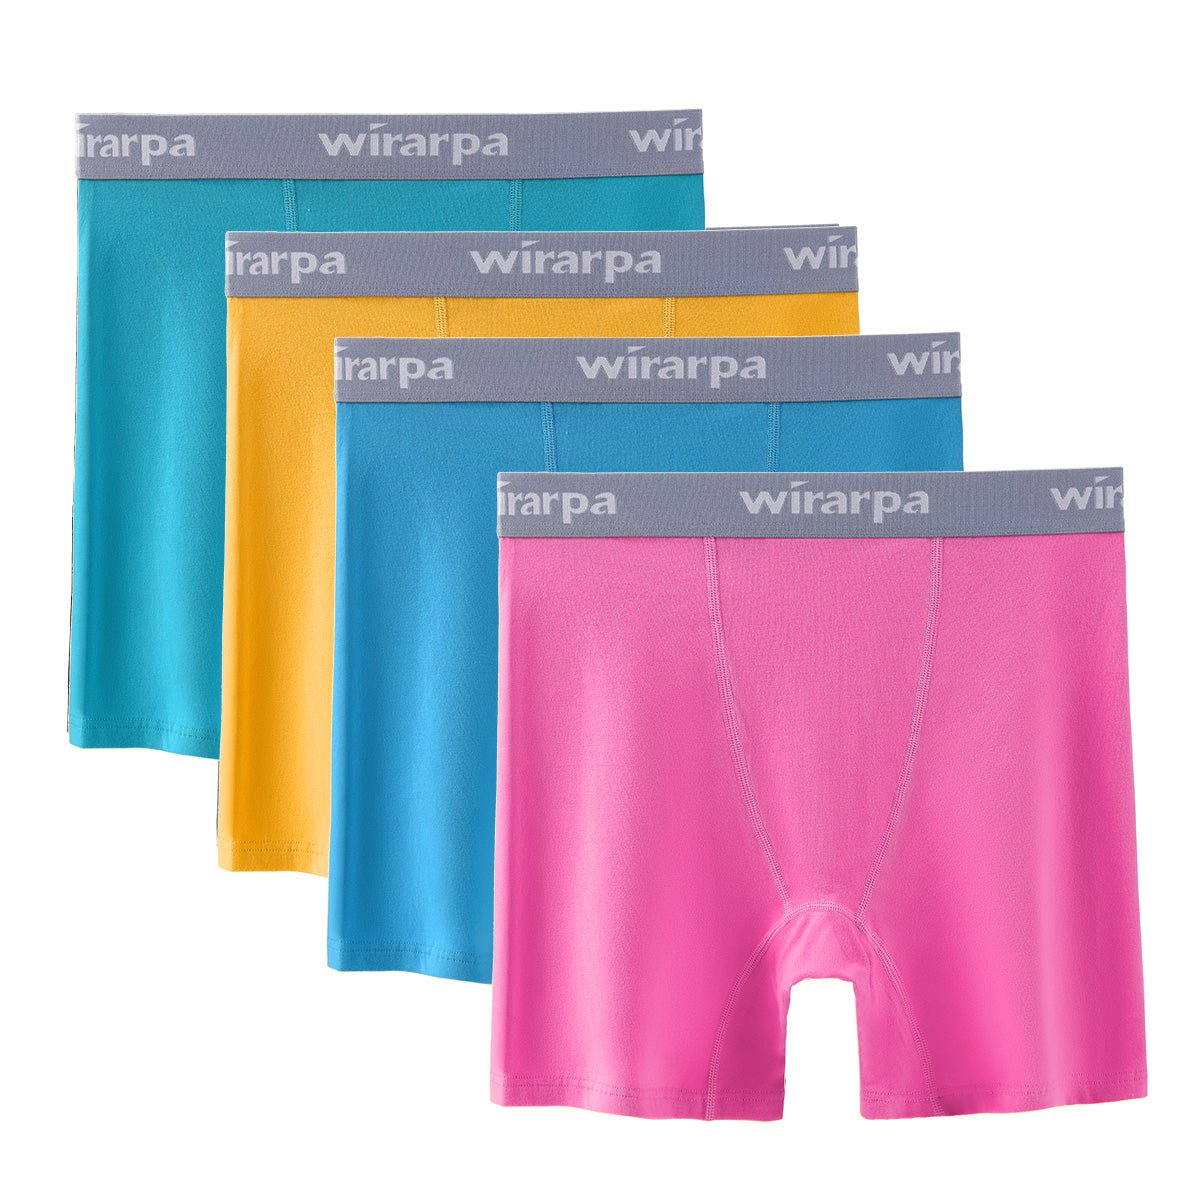 wirarpa Women's Cotton Boxer Briefs Underwear Anti Chafe Boy Shorts 3  Inseam 4 Pack Black 2X-Large 